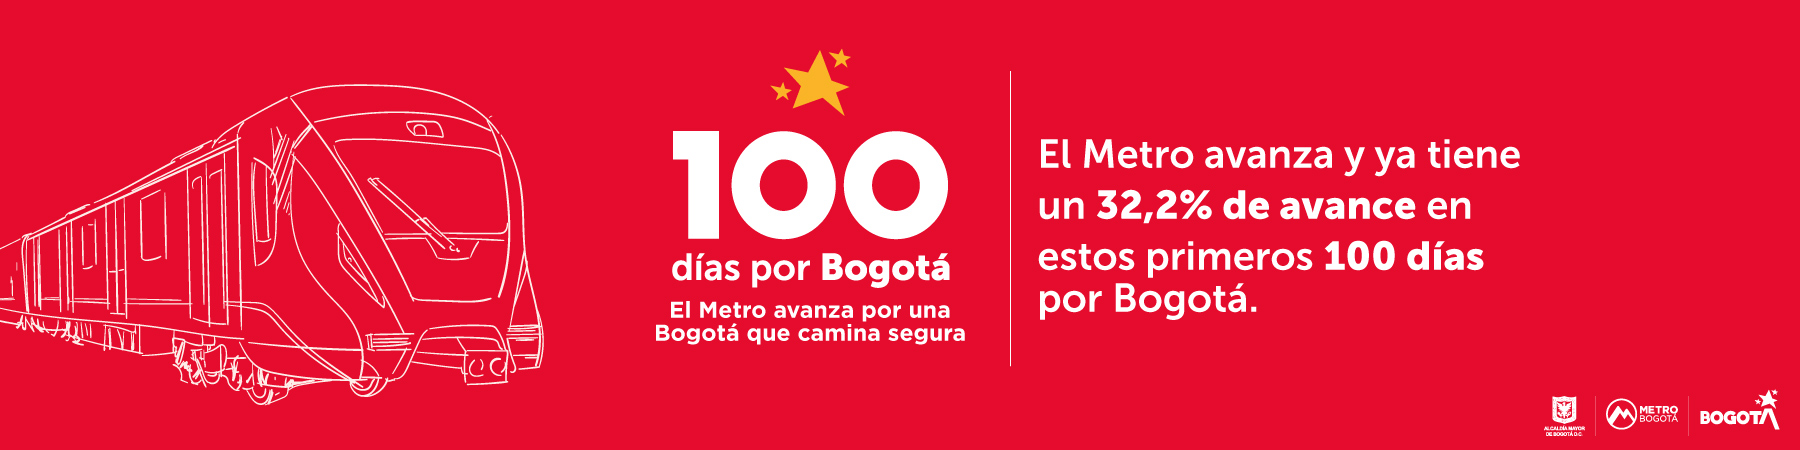 El Metro avanza y ya tiene un 32,2% de avance en estos primeros 100 días por Bogotá